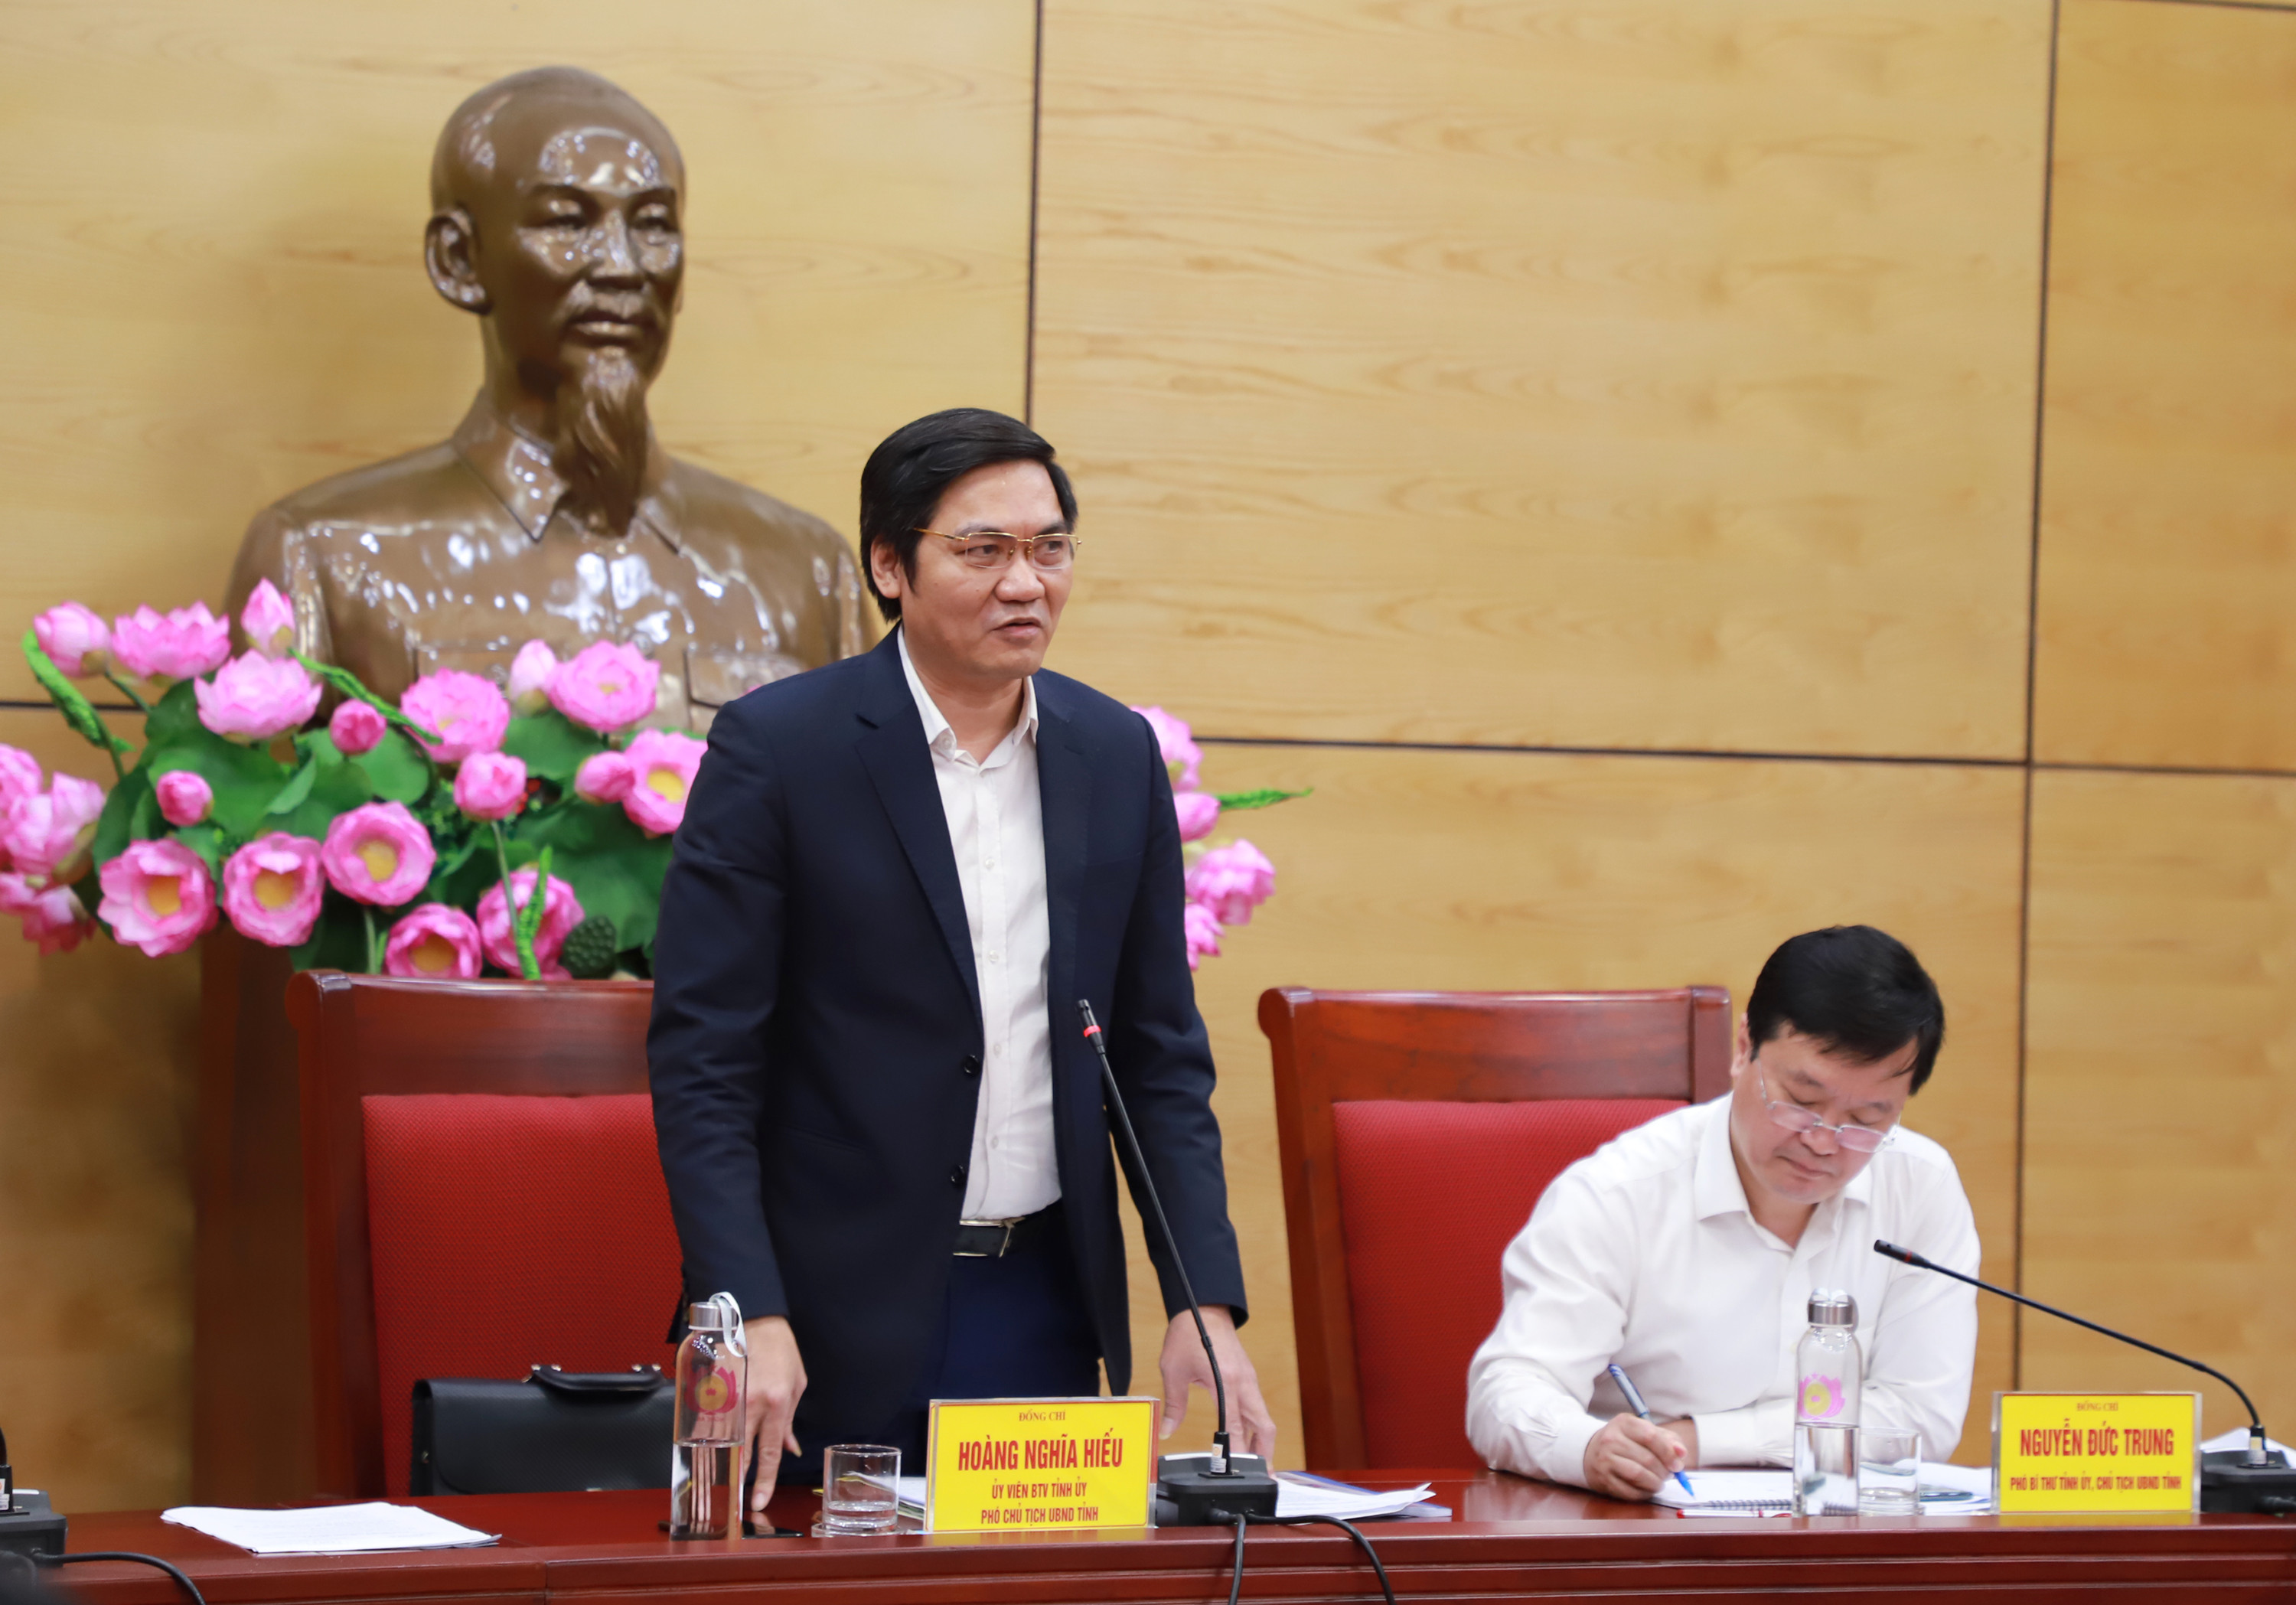 Đồng chí Hoàng Nghĩa Hiếu - Phó Chủ tịch UBND tỉnh phát biểu tại cuộc họp. Ảnh: Phạm Bằng